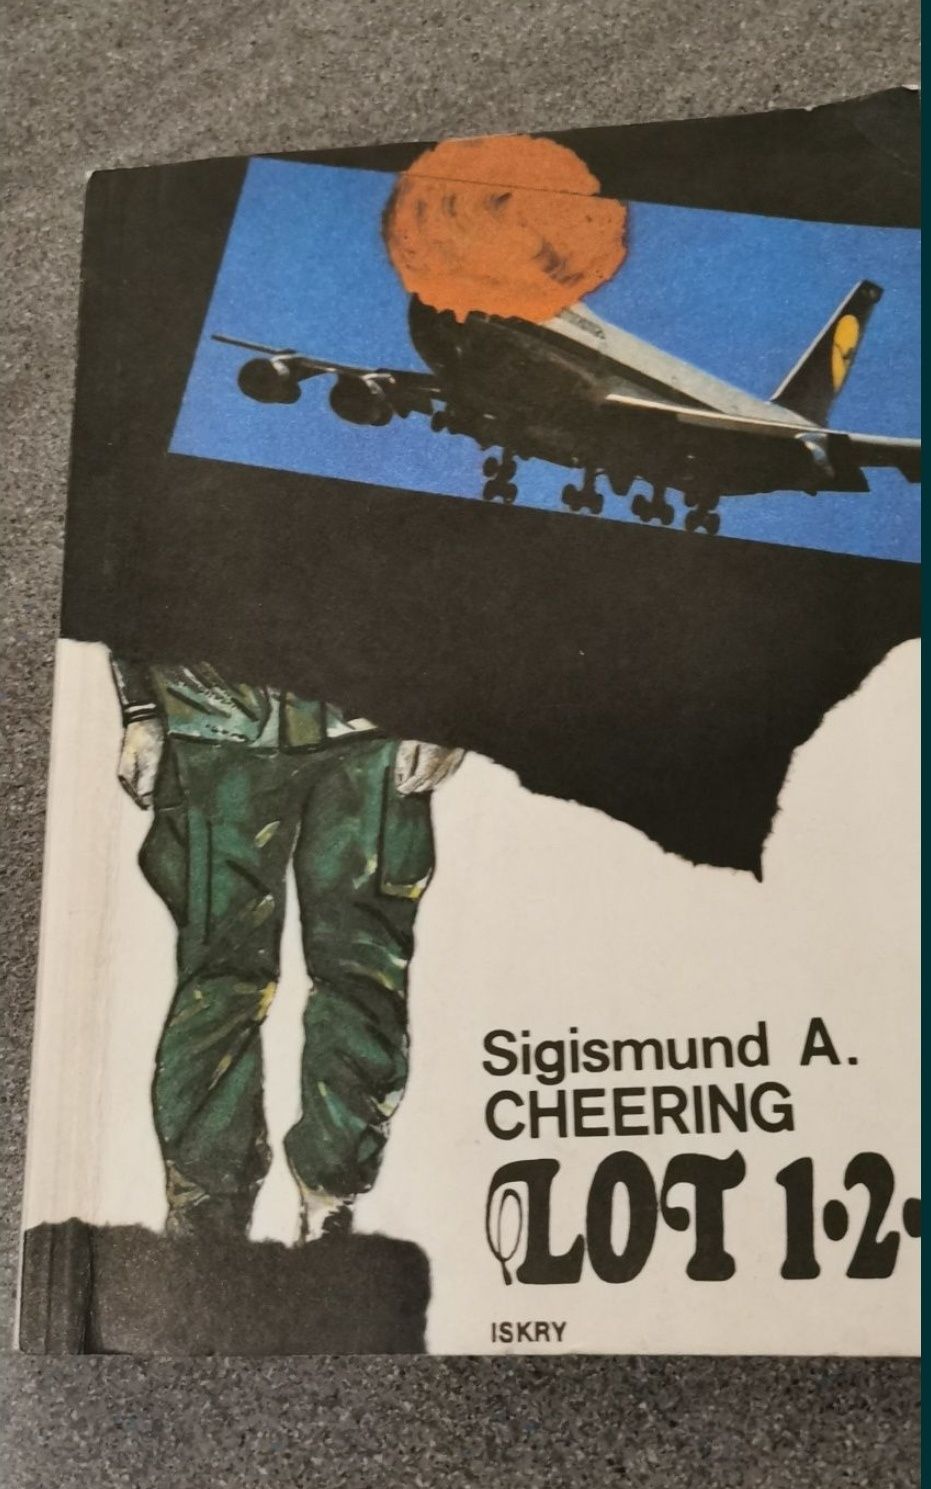 Lot 121 Sigismund A. Cheering